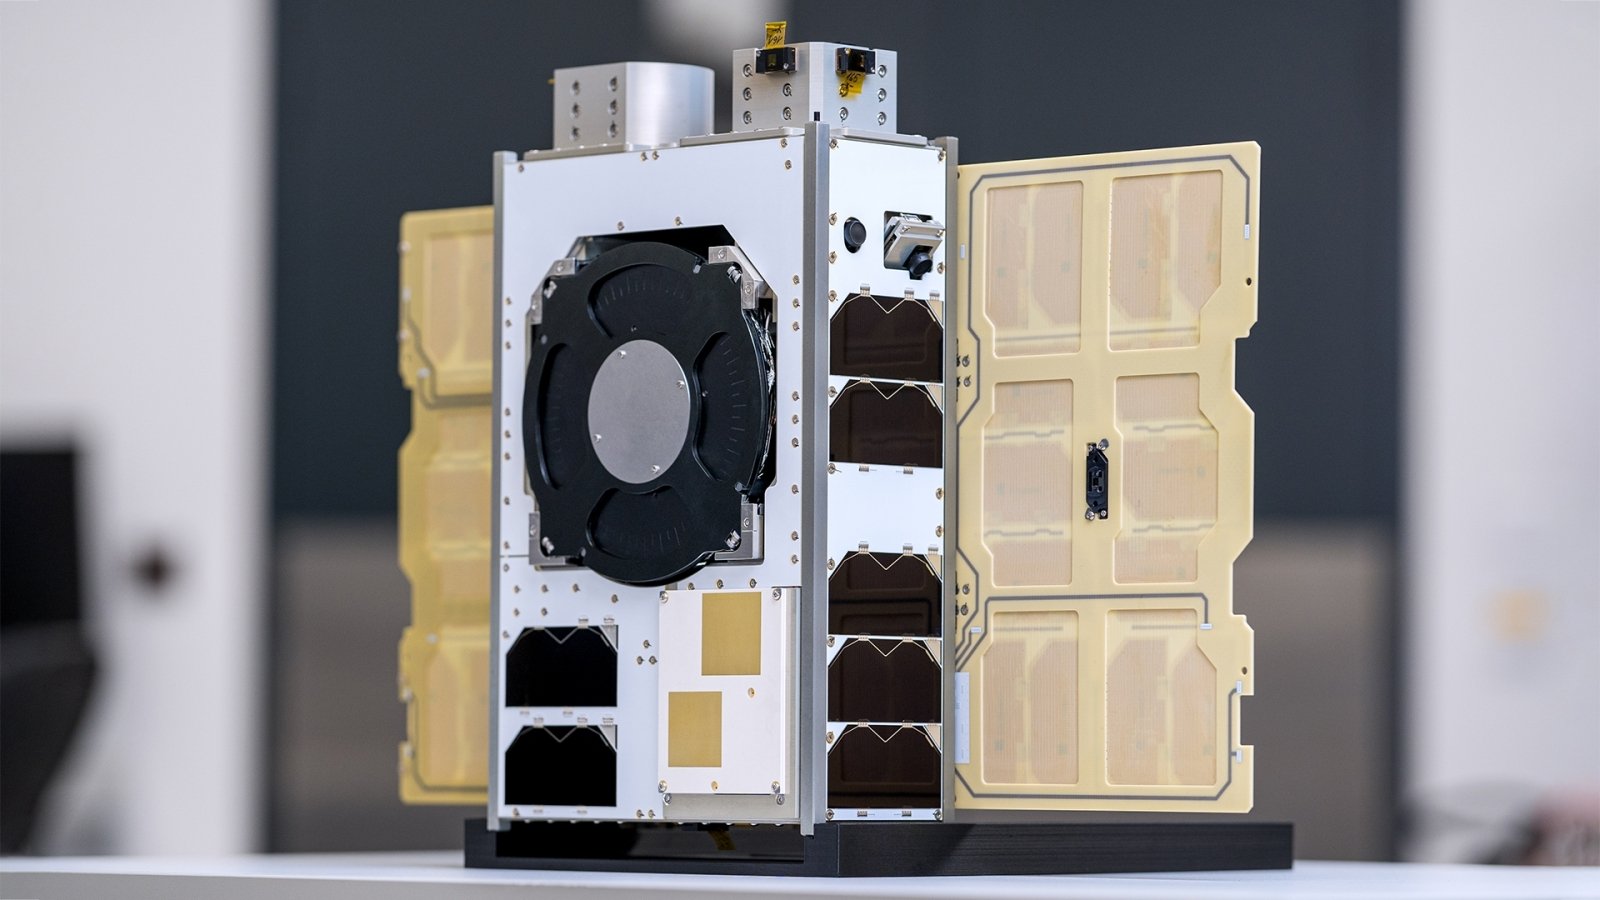 Fire flere satellitter opprettet i Litauen ble løftet av SpaceX – NanoAvionics var den første i Europa som integrerte solseil